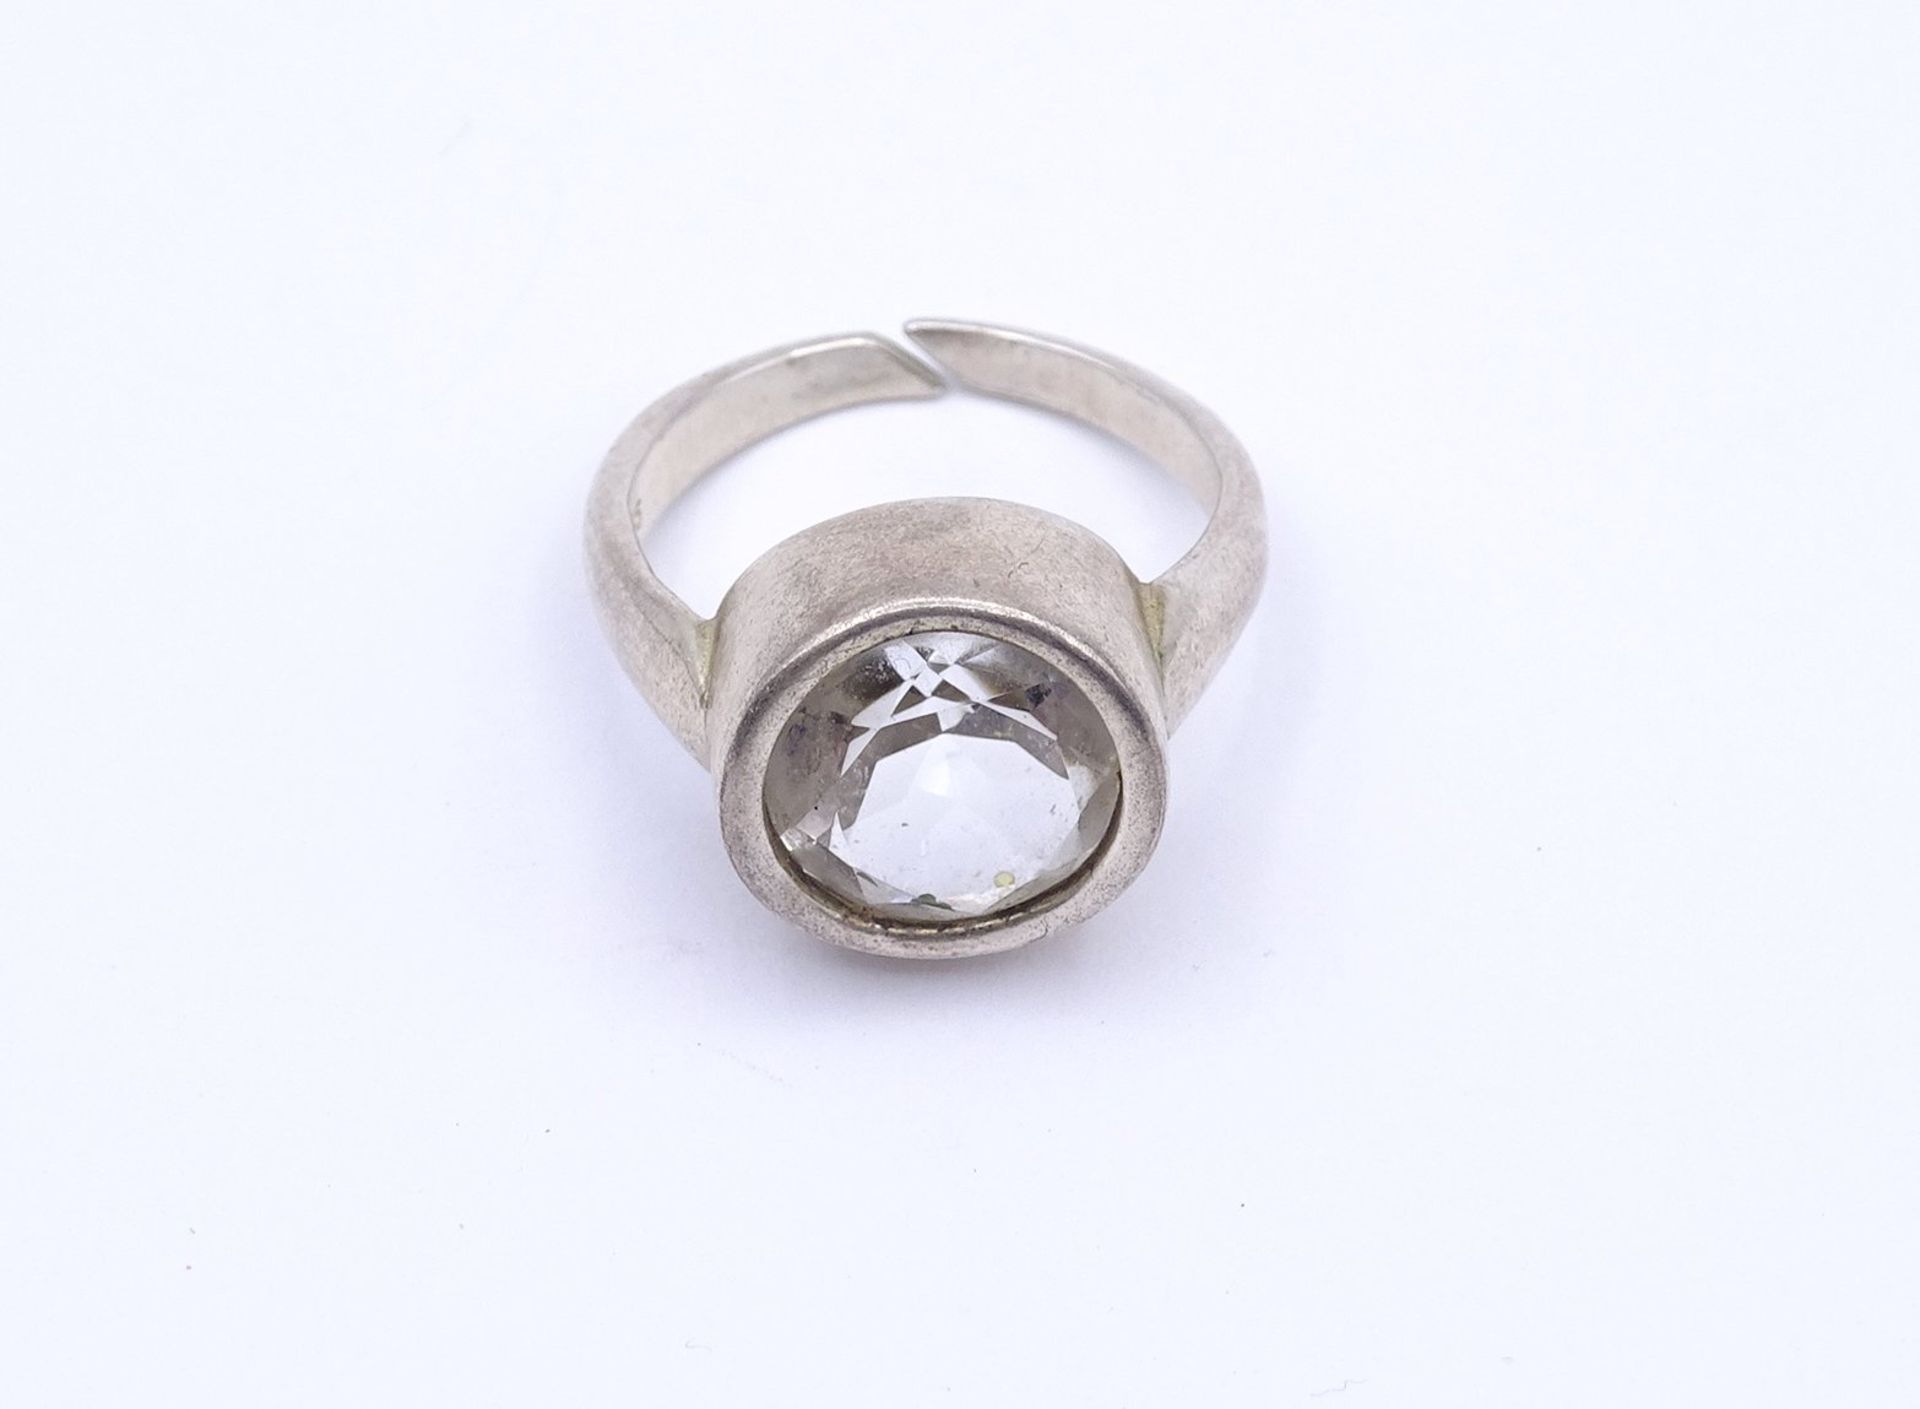 835er Silber Ring mit einen rund facc. Bergkristall, offene Ringschiene, 5,9g. - Bild 2 aus 3